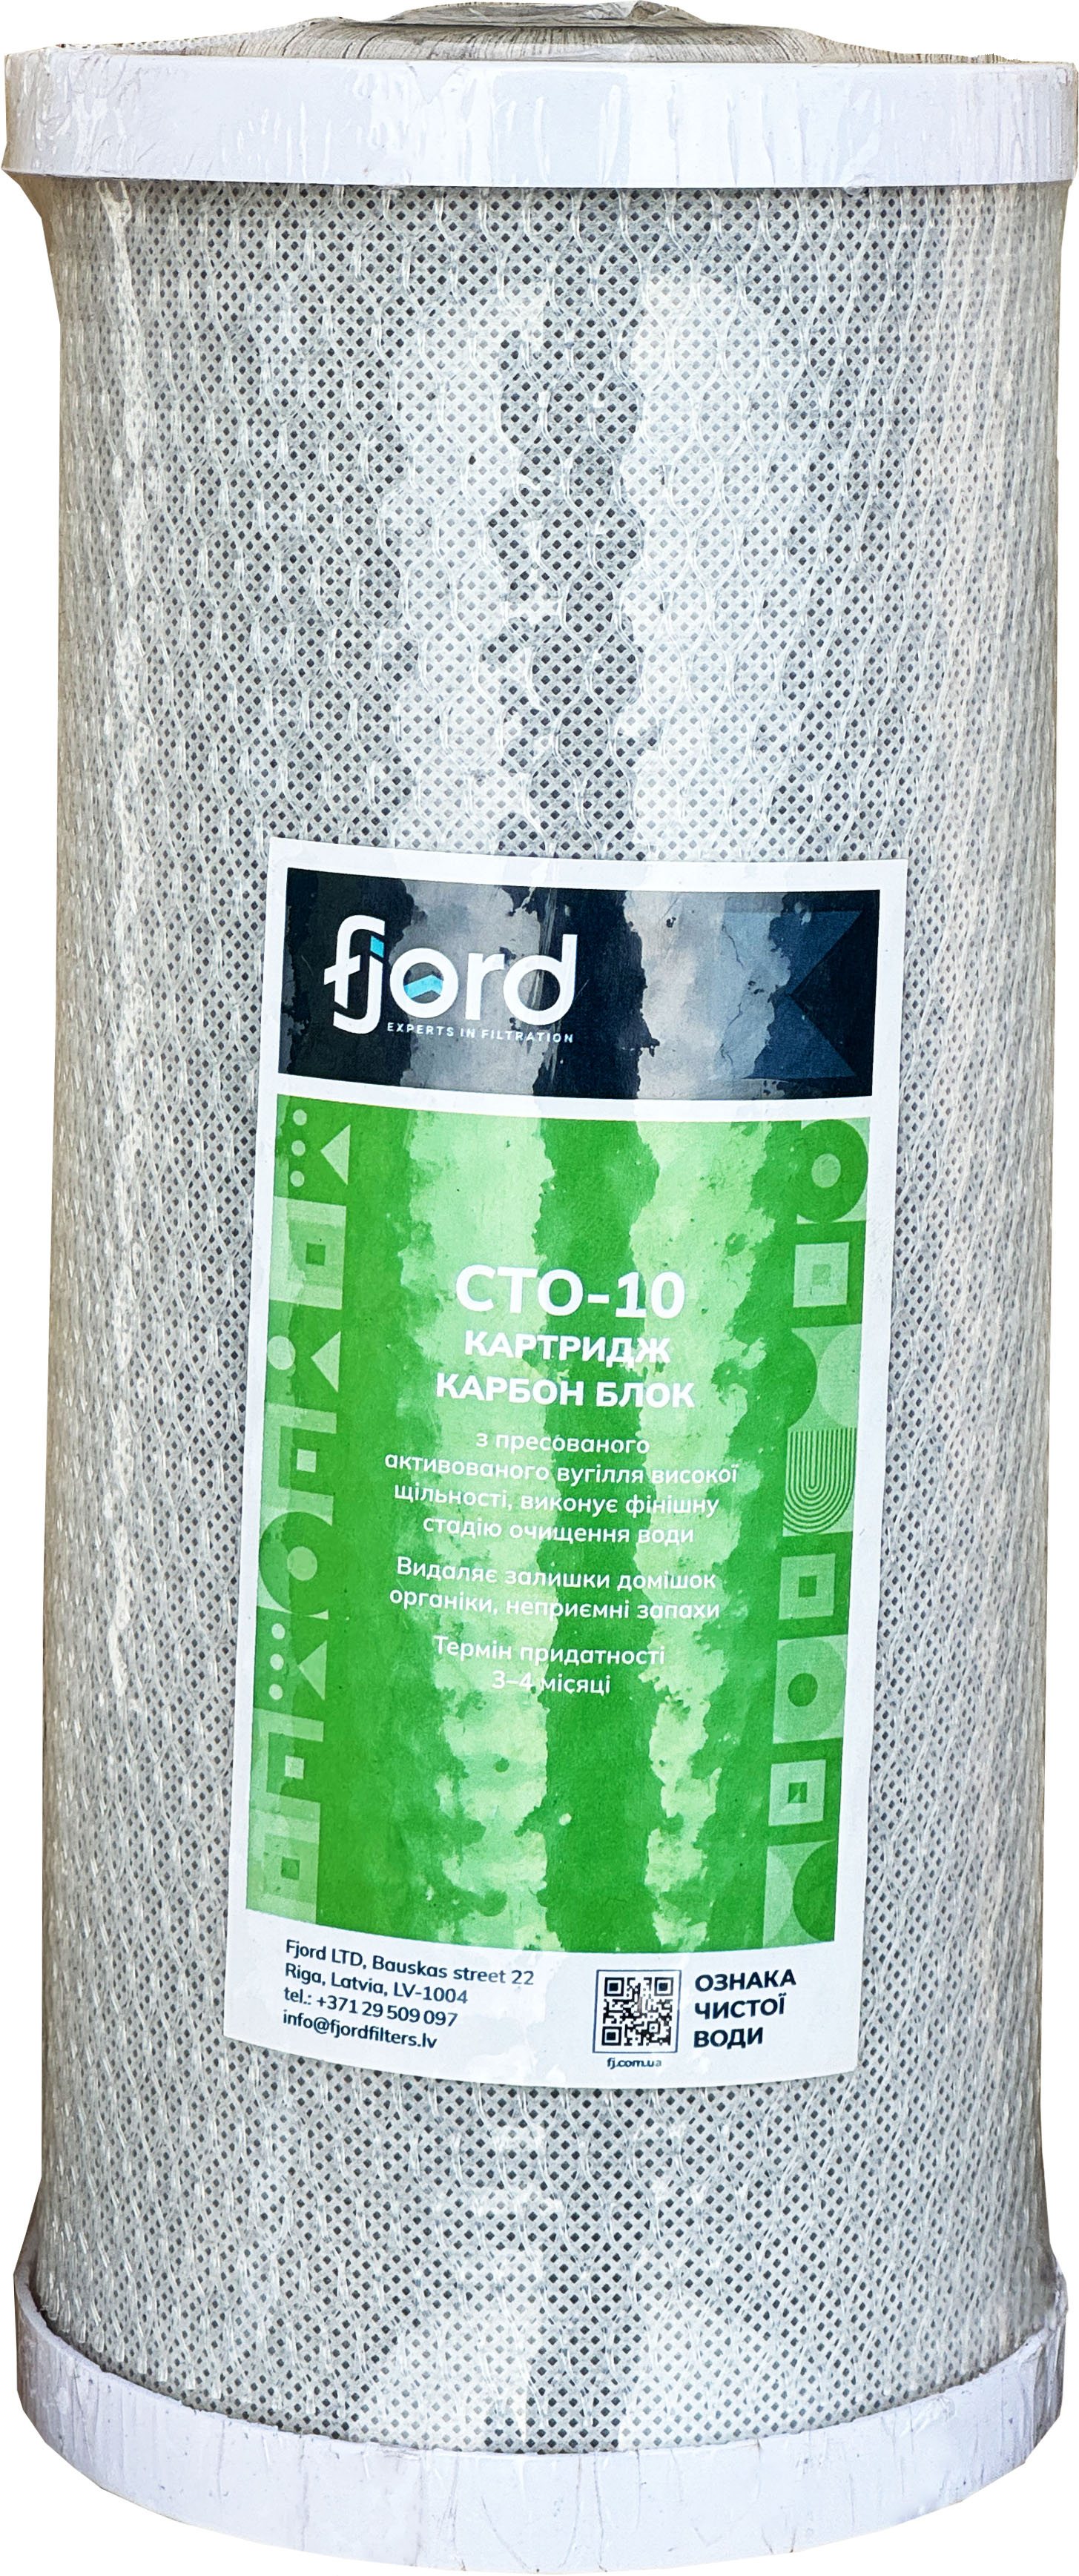 Картридж для фильтра Fjord CTO-BB10 (уголь)